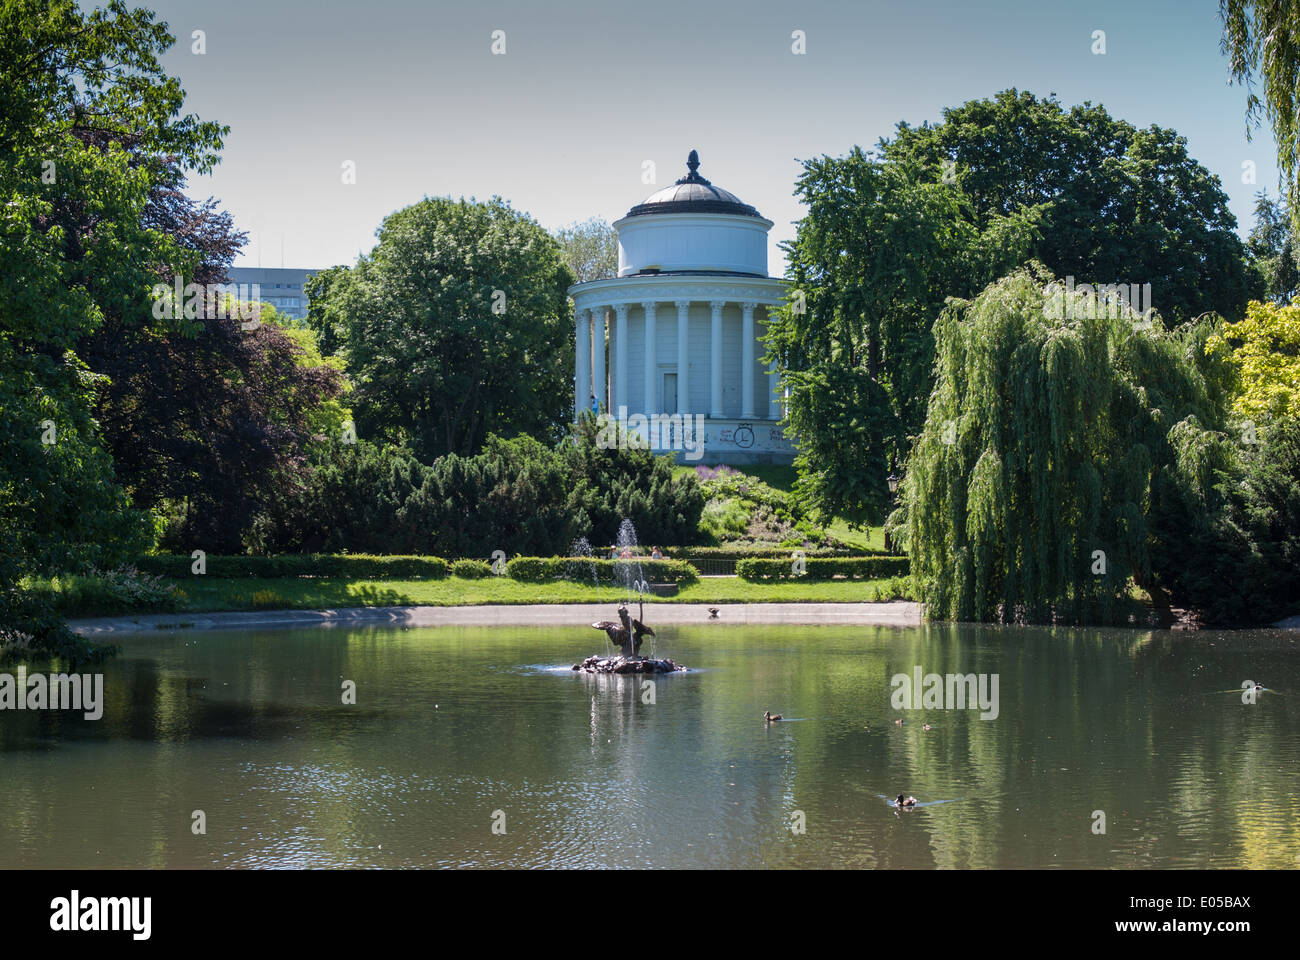 Lake and Water Tower, Ogród Saski (Saxon Garden), Warsaw, Poland Stock Photo